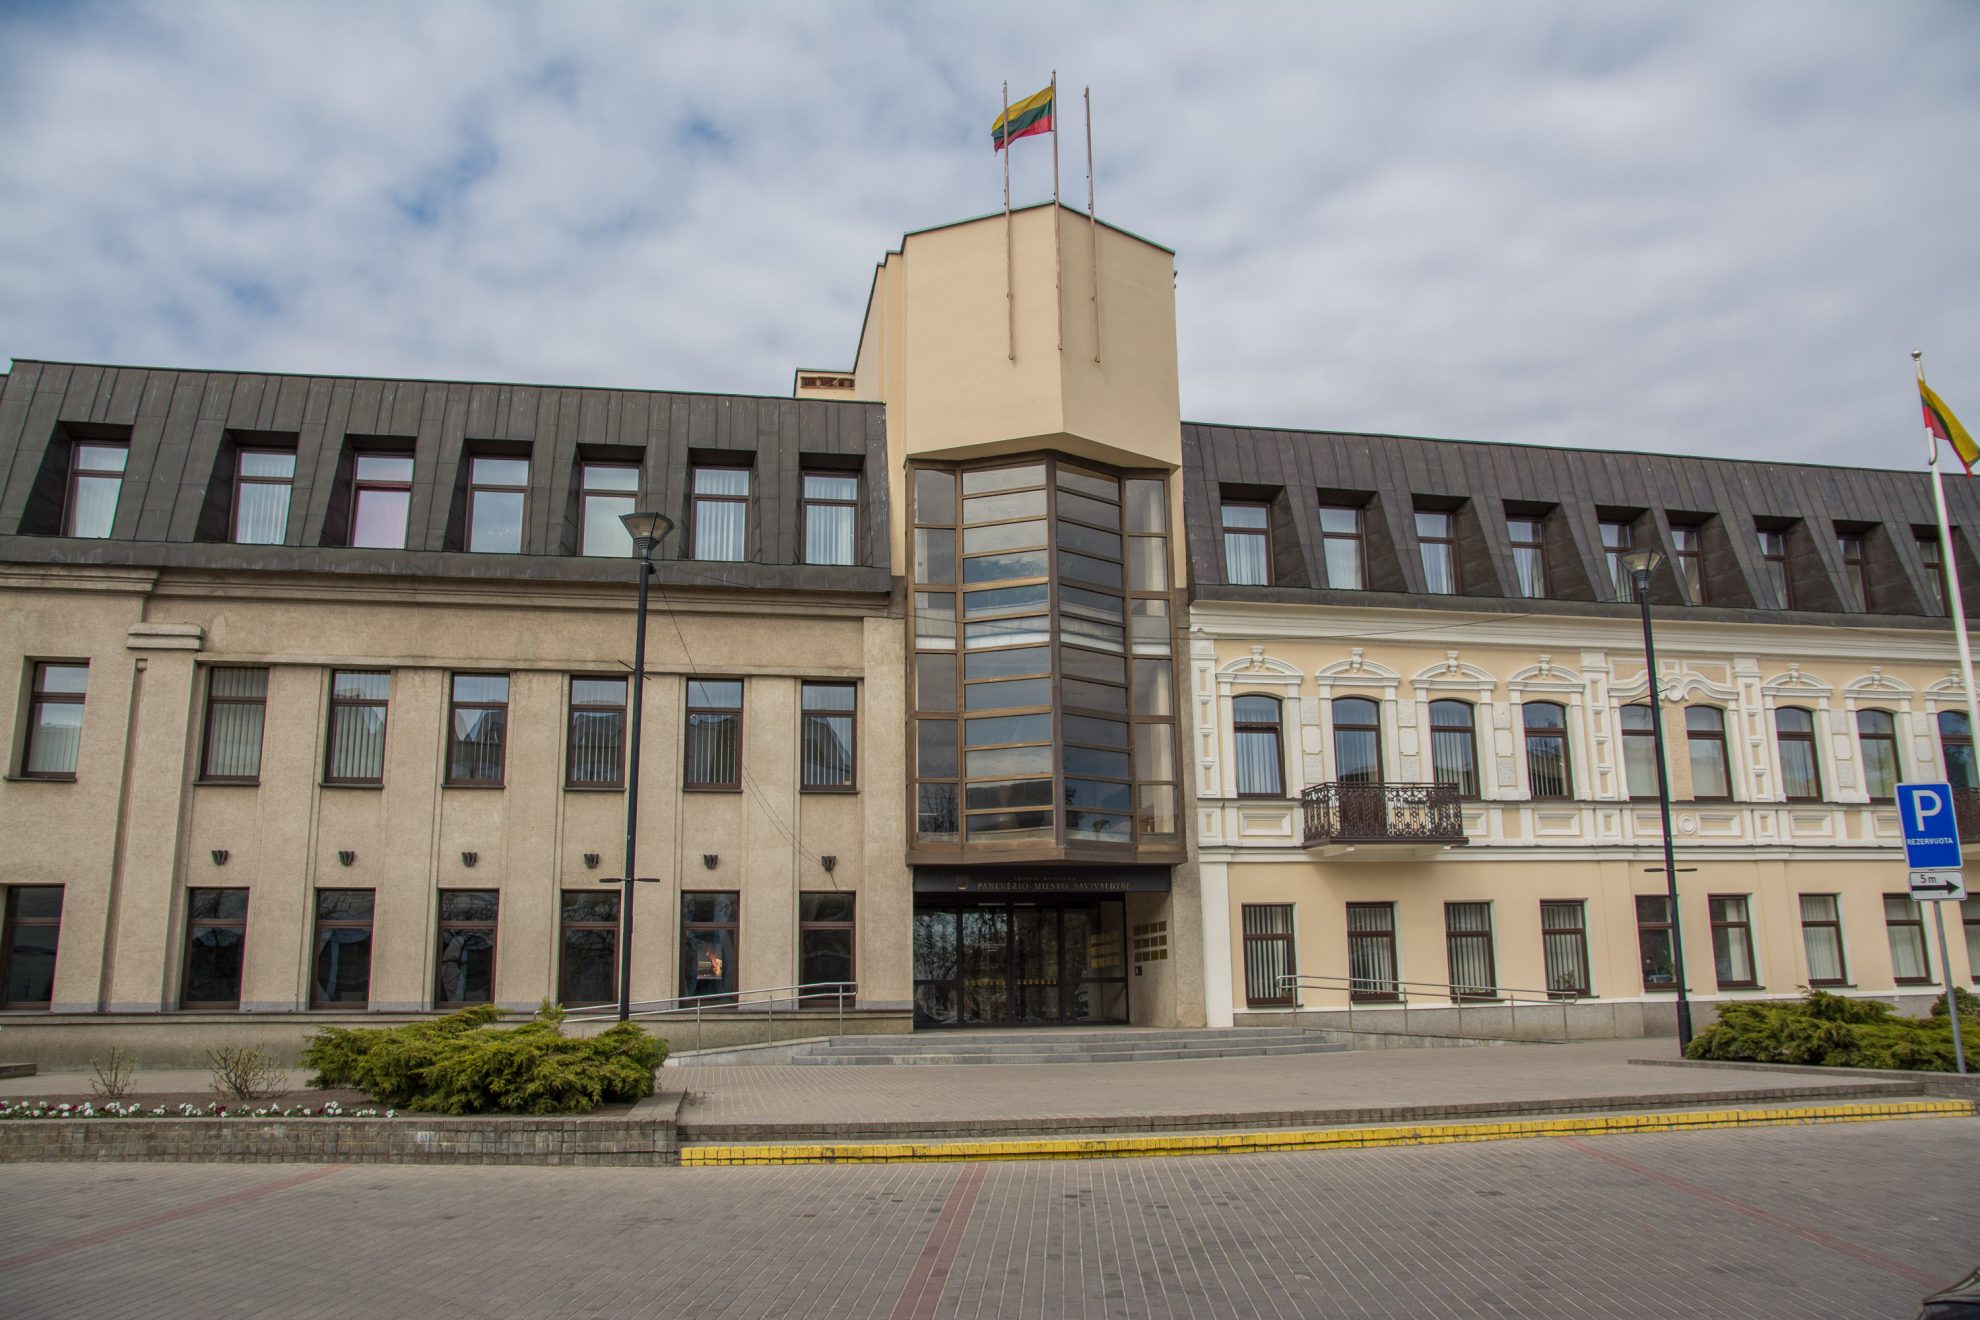 Panevėžio apygardos teismas, išnagrinėjęs Panevėžio m. savivaldybės apeliacinį skundą, patvirtino, kad L. Sandienė iš Savivaldybės atleista neteisėtai.